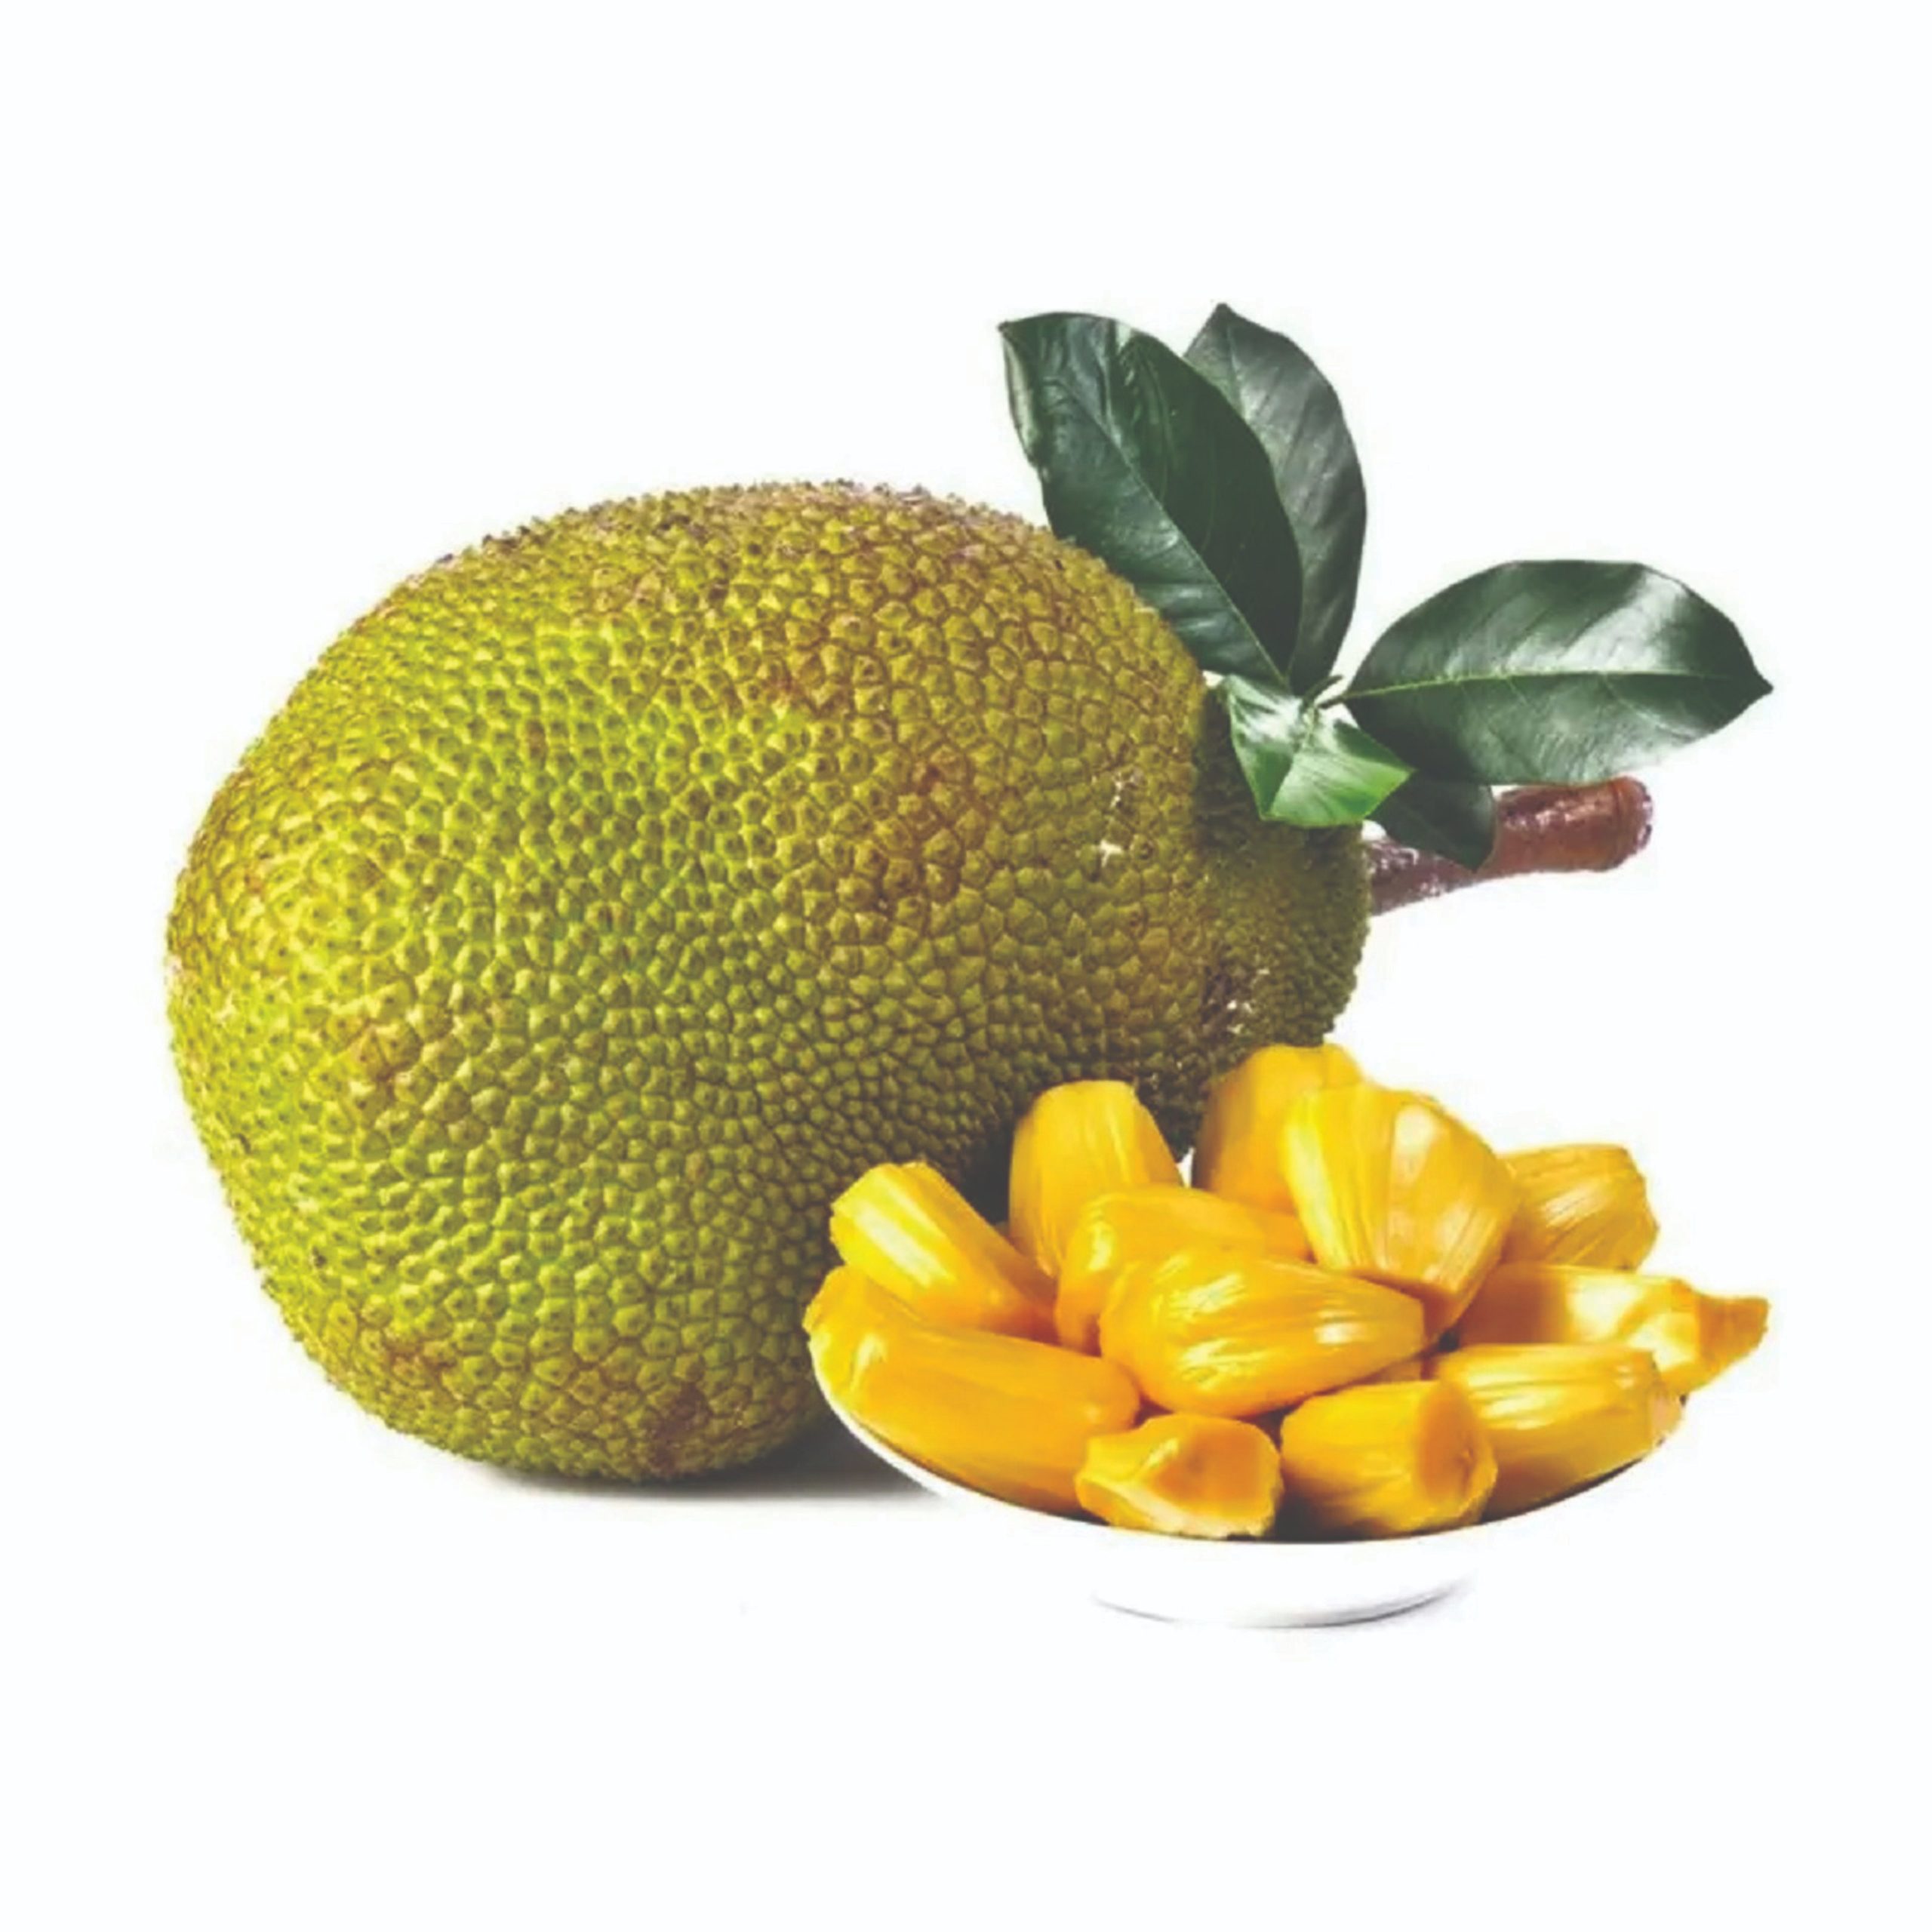 jackfruit nangka